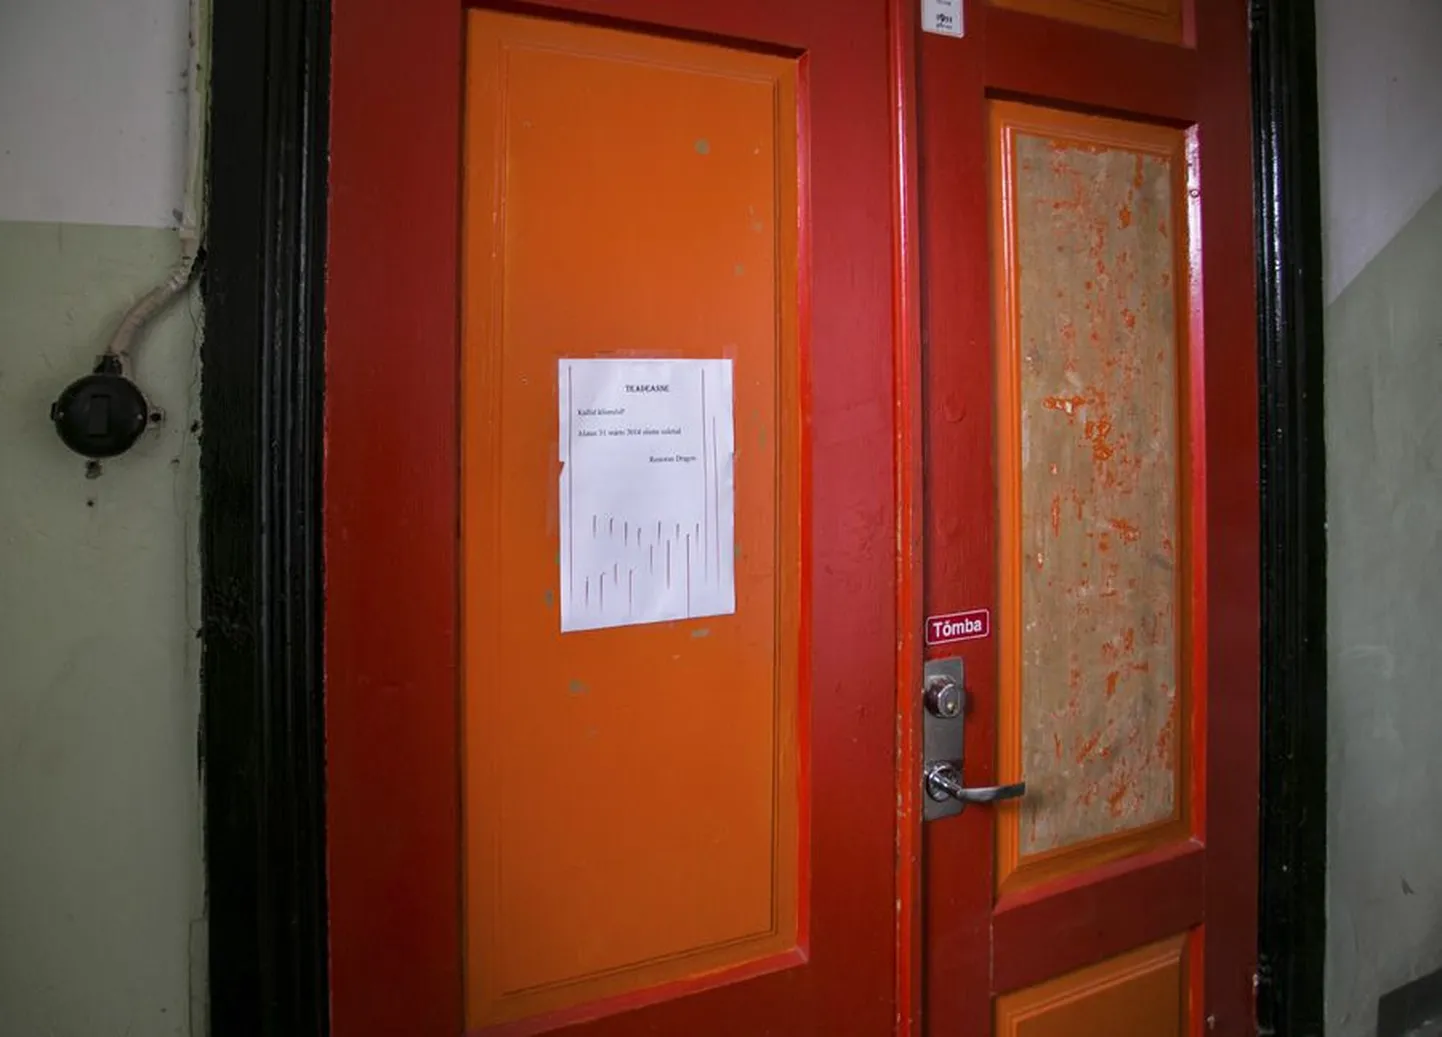 Silt endise Draakoni restorani uksel annab teada, et söögikoht on 31. märtsist suletud.